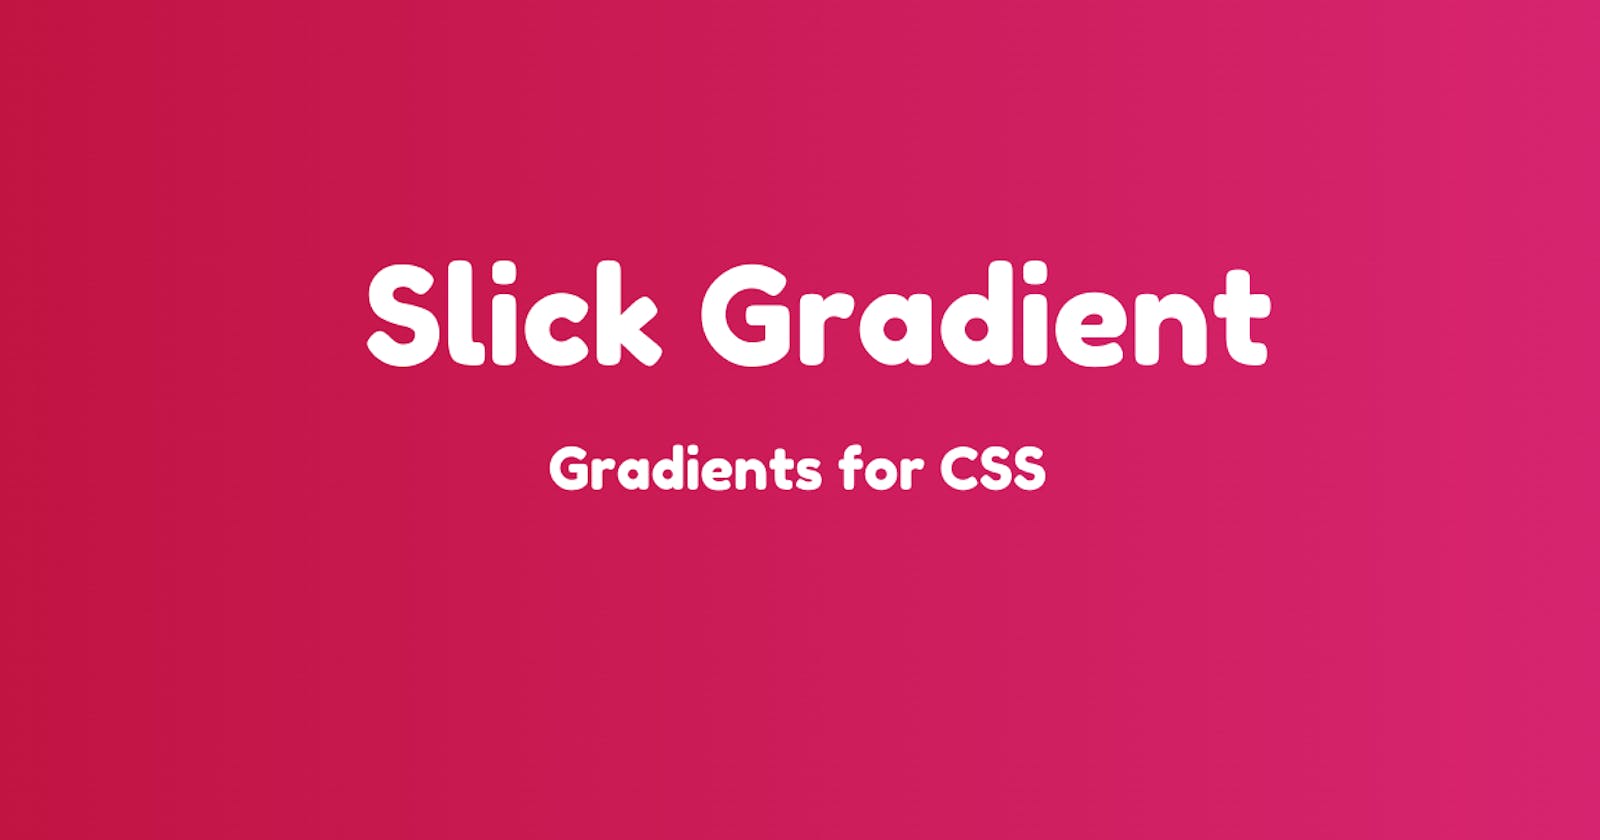 Introducing Slick Gradient